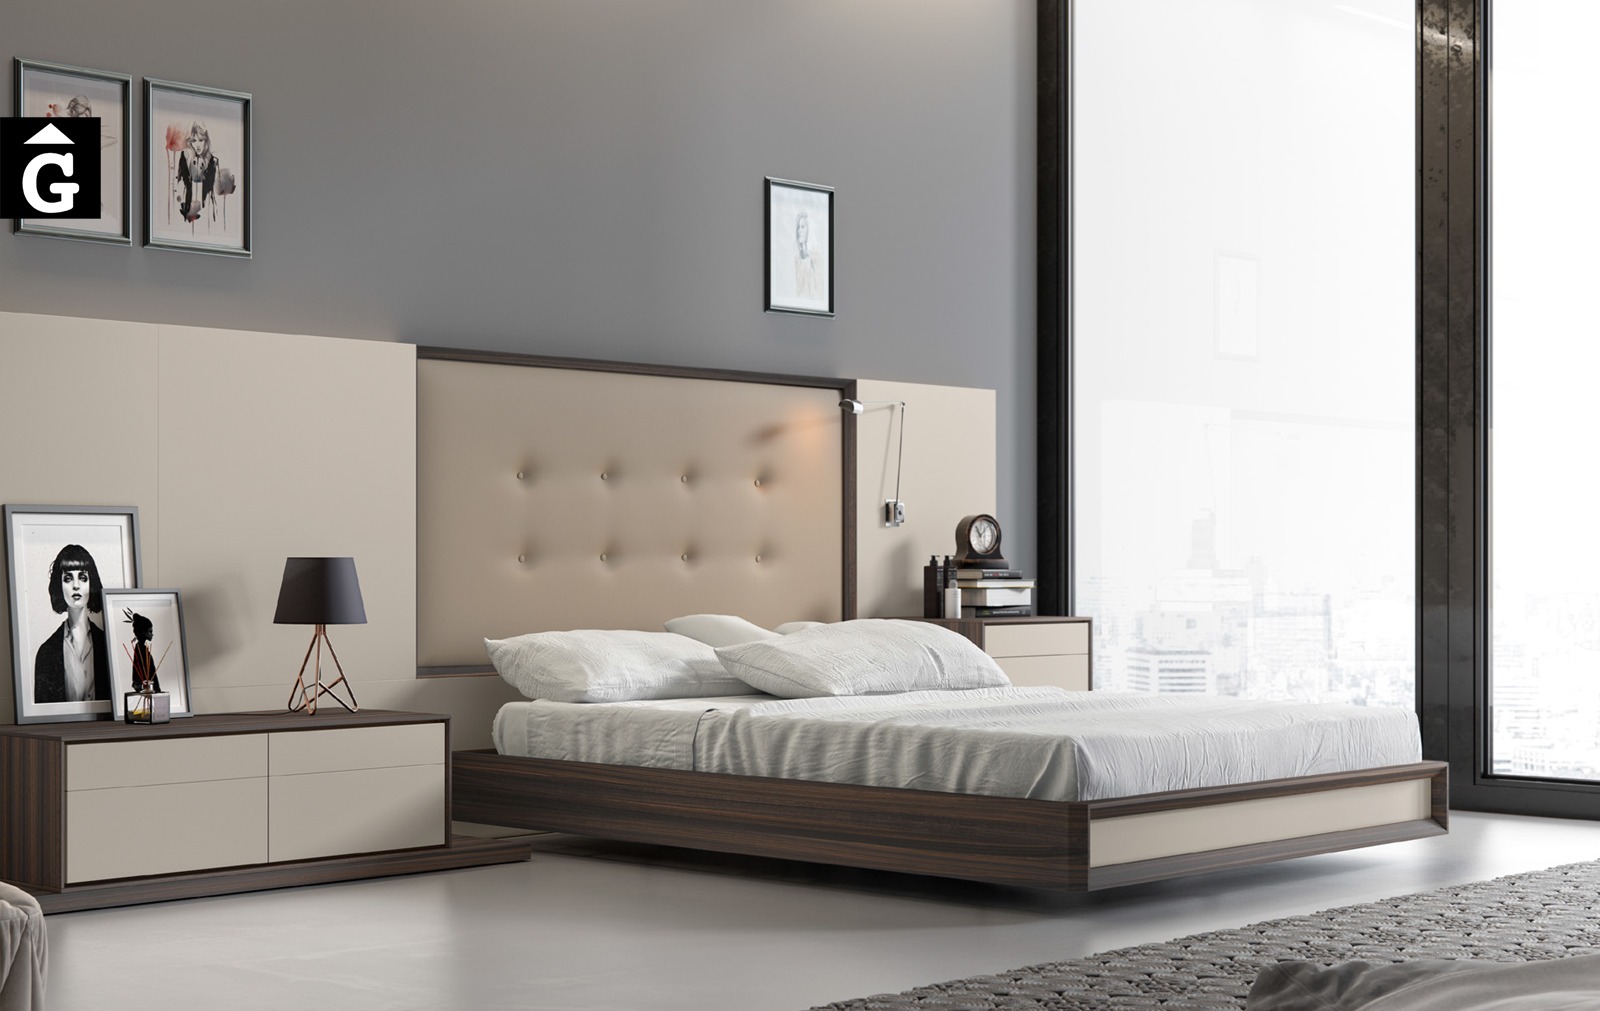 Capçal System Mark-bedrooms-emede-md-by-mobles-gifreu-llits-grans-matrimoni-singel-disseny-actual-qualitat-premium